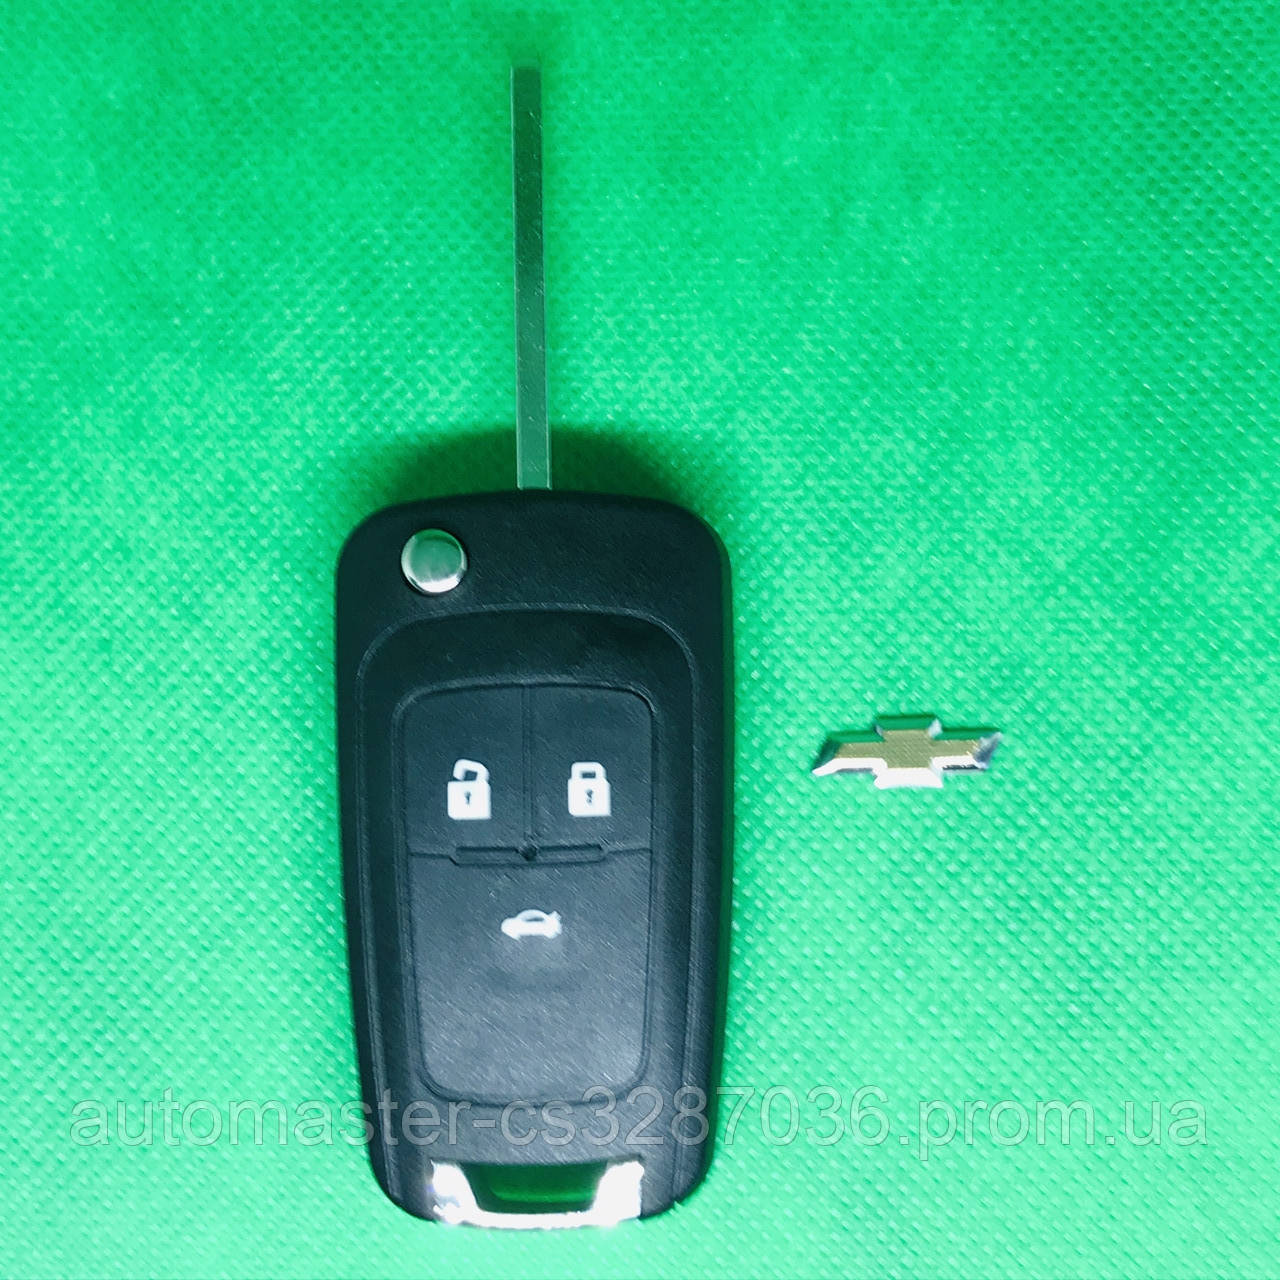 Корпус выкидного автоключа для CHEVROLET (Шевролет круз) CRUZE 3 - кнопки